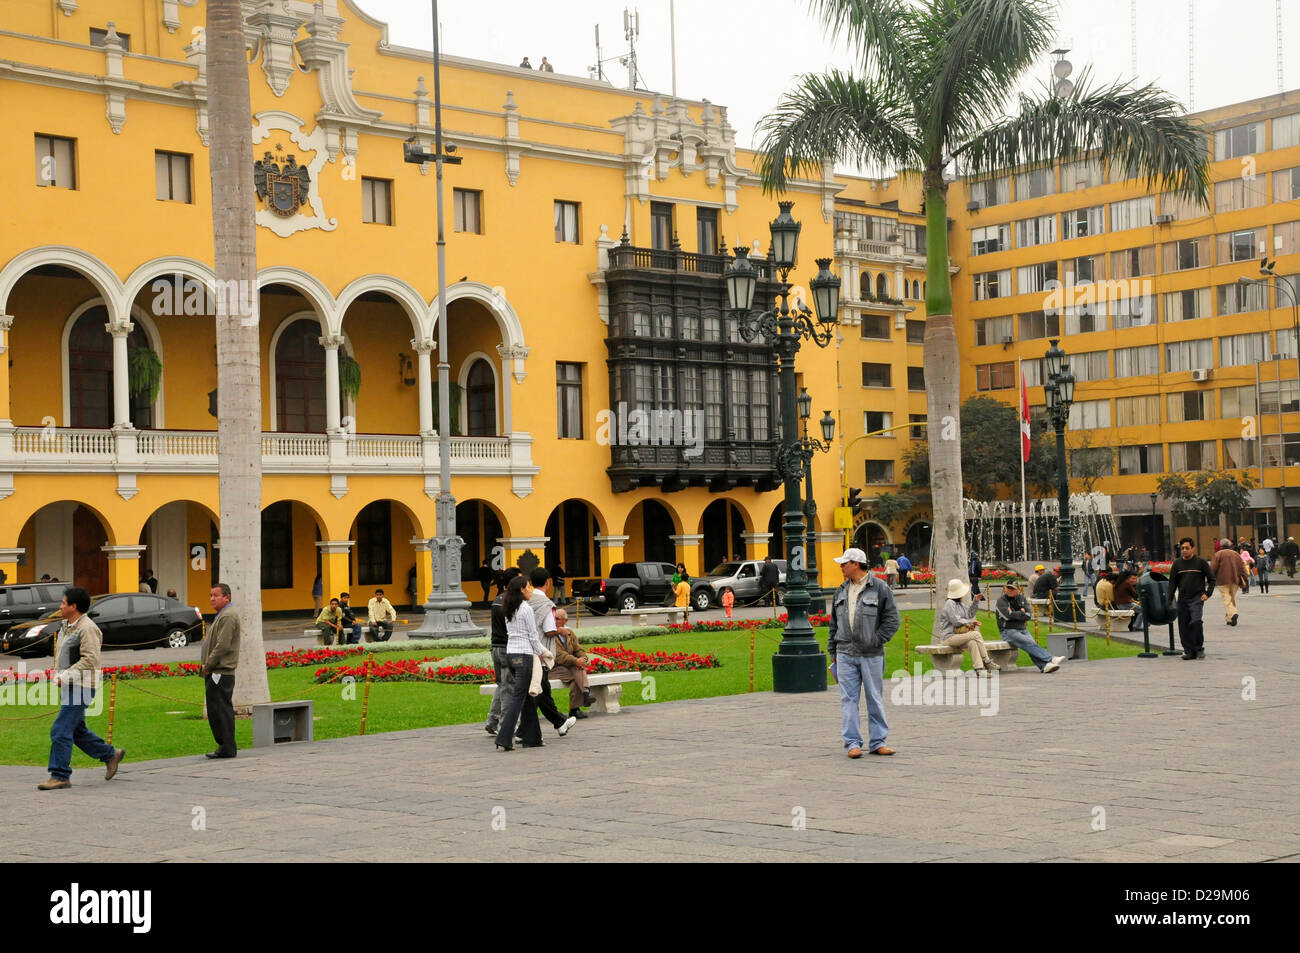 City Hall, Plaza De Armas, Ima, Peru Stock Photo